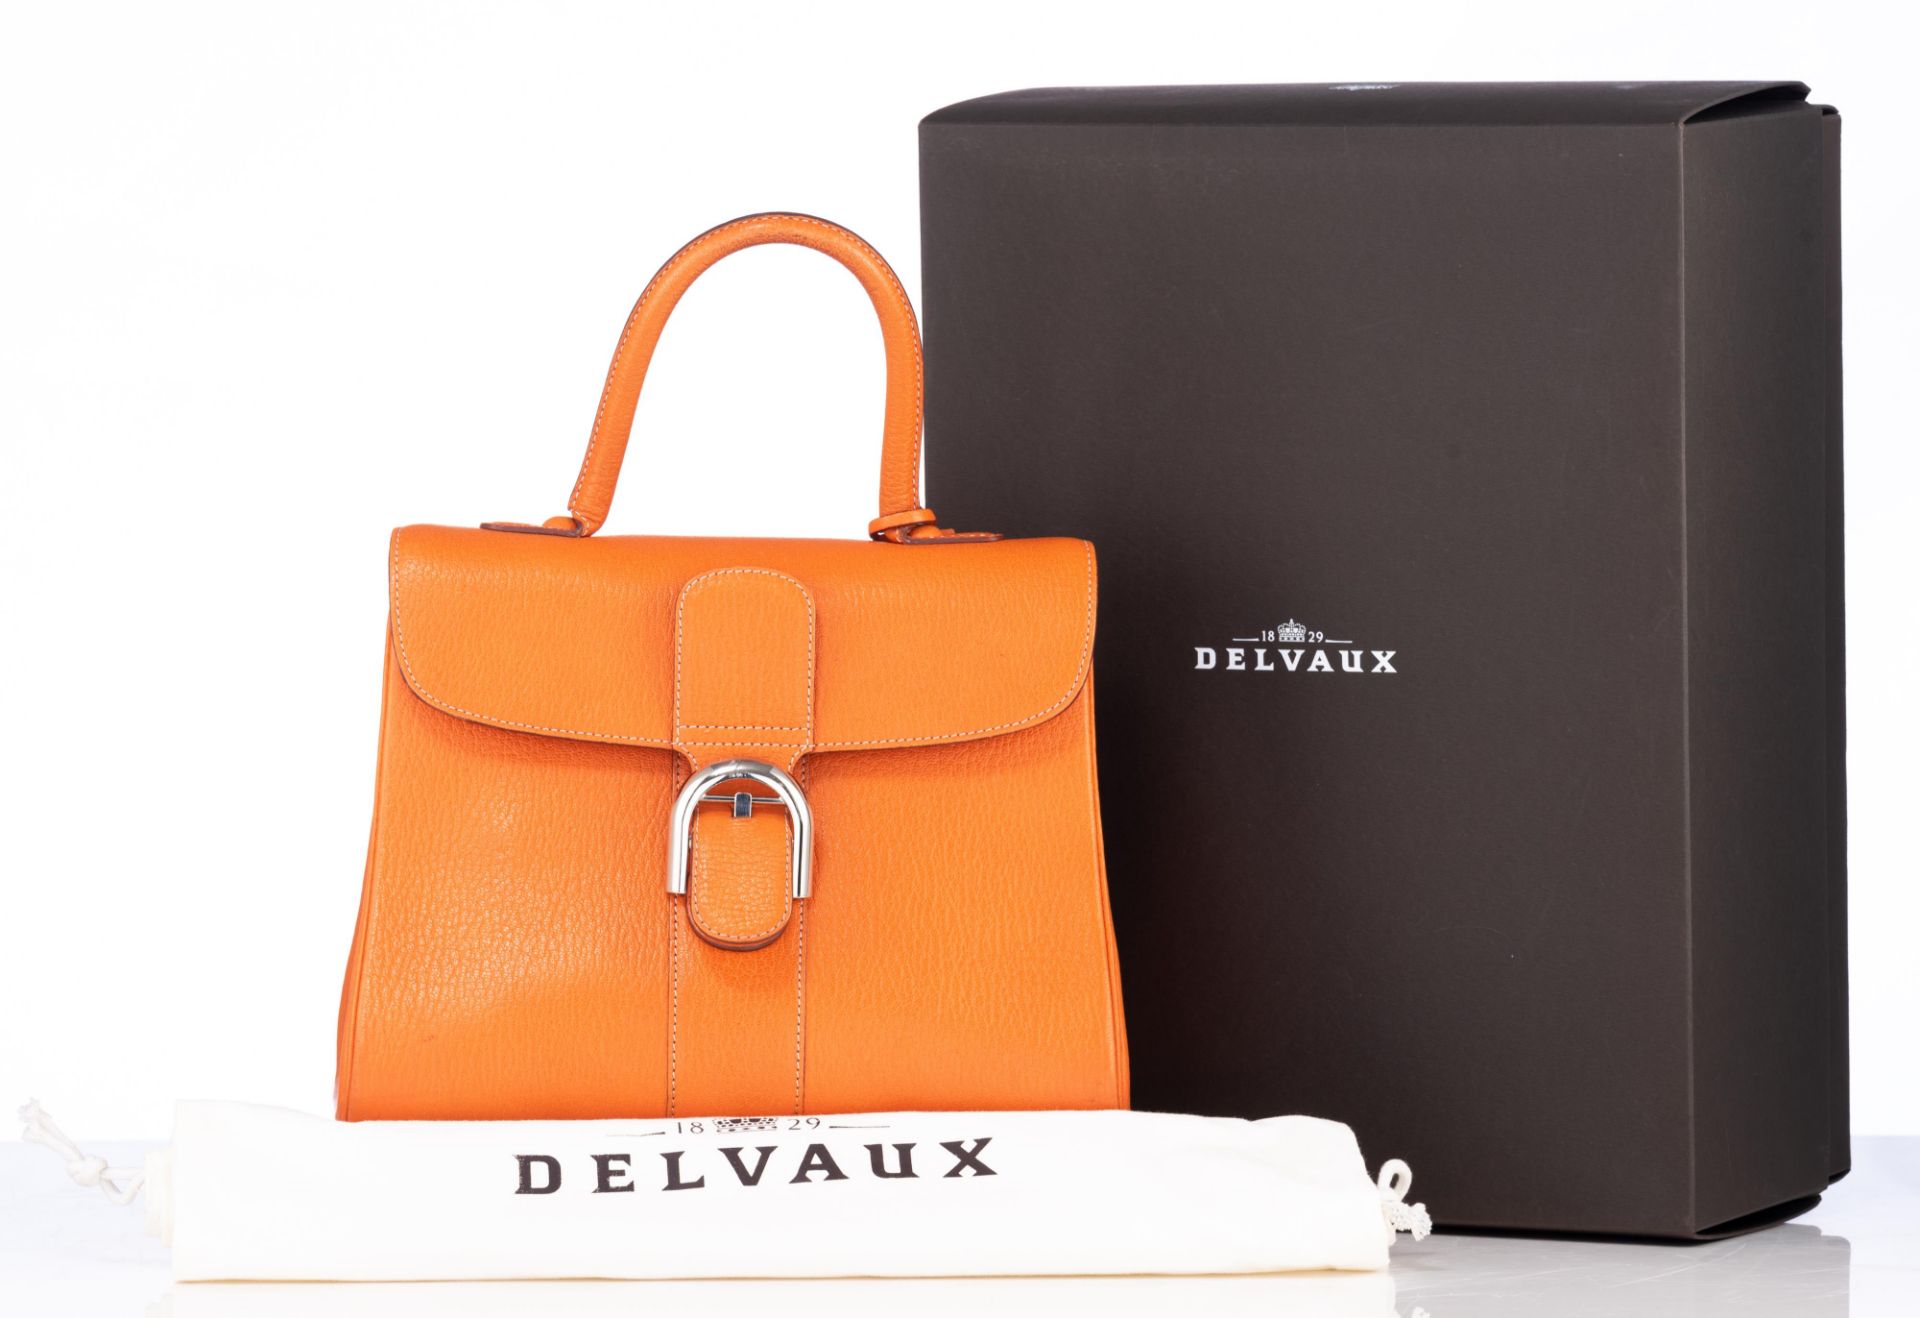 An orange leather Delvaux Brillant MM handbag, H 22 - W 29 cm - D 14,5 cm - Image 2 of 17